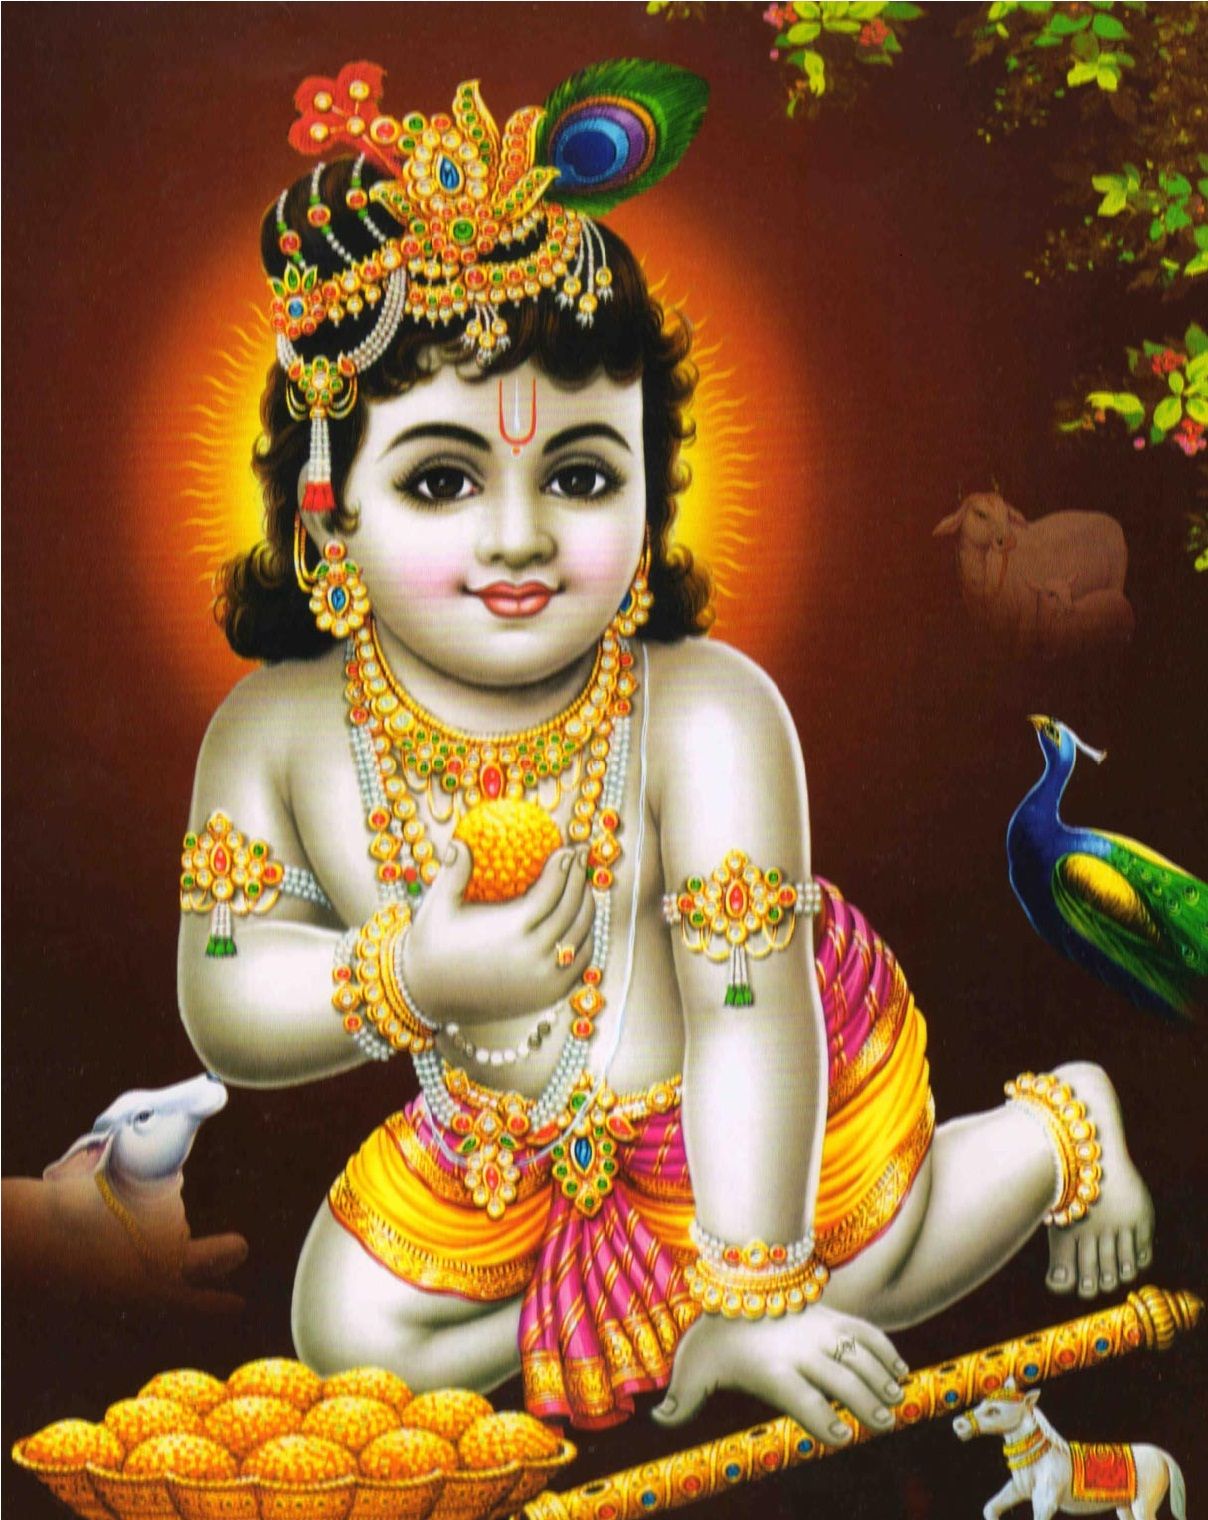 Hindu God Wallpapers For Mobile Phones, God Images - God Images Download -  1208x1520 Wallpaper 